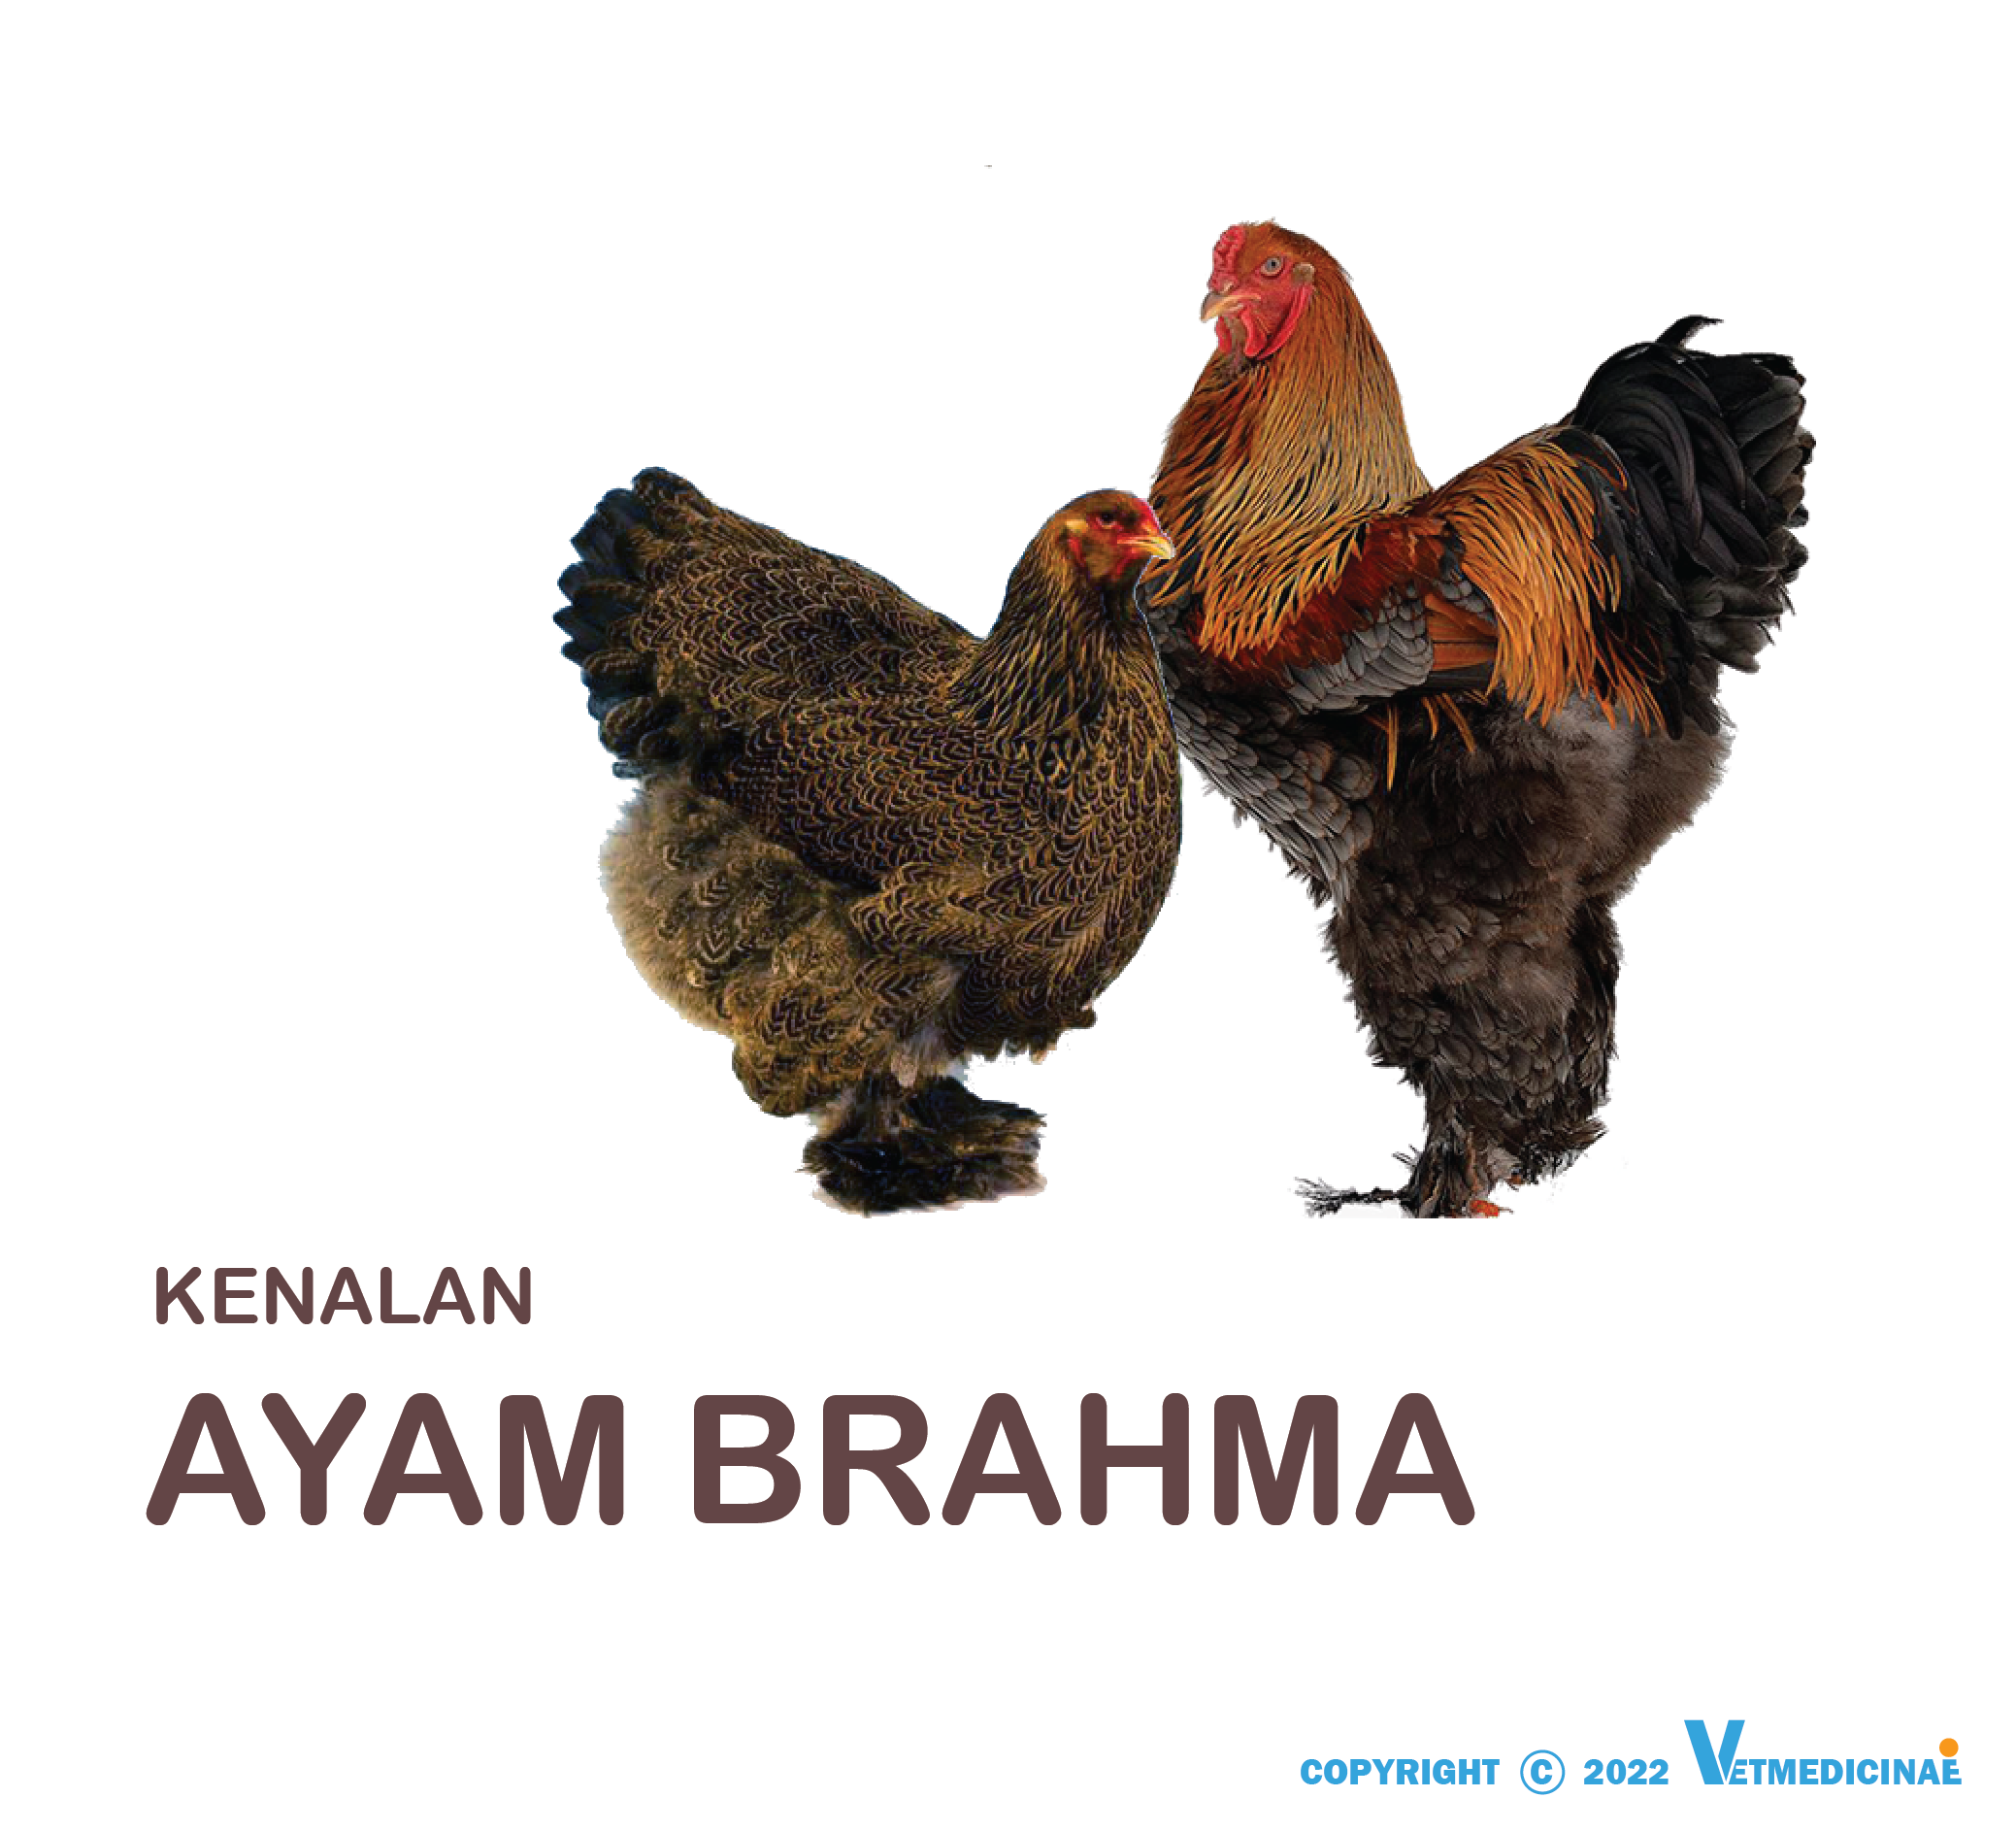 jenis ayam brahma terbesar di indonesia